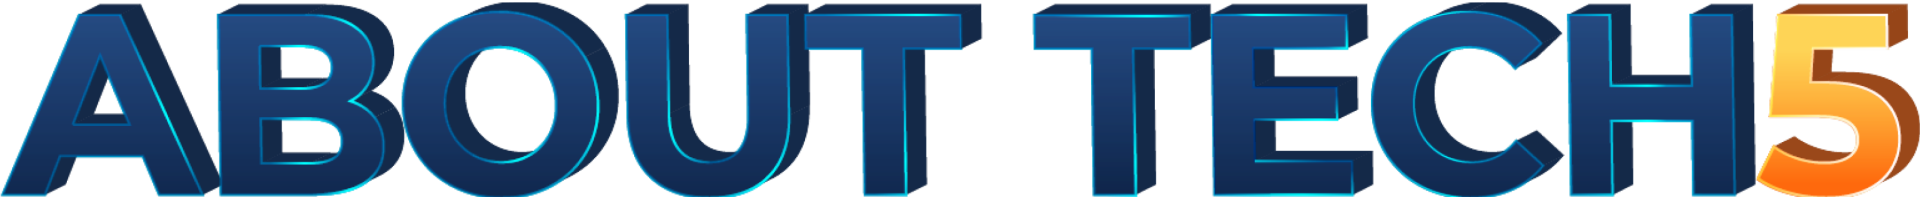 About tech 5 logo.